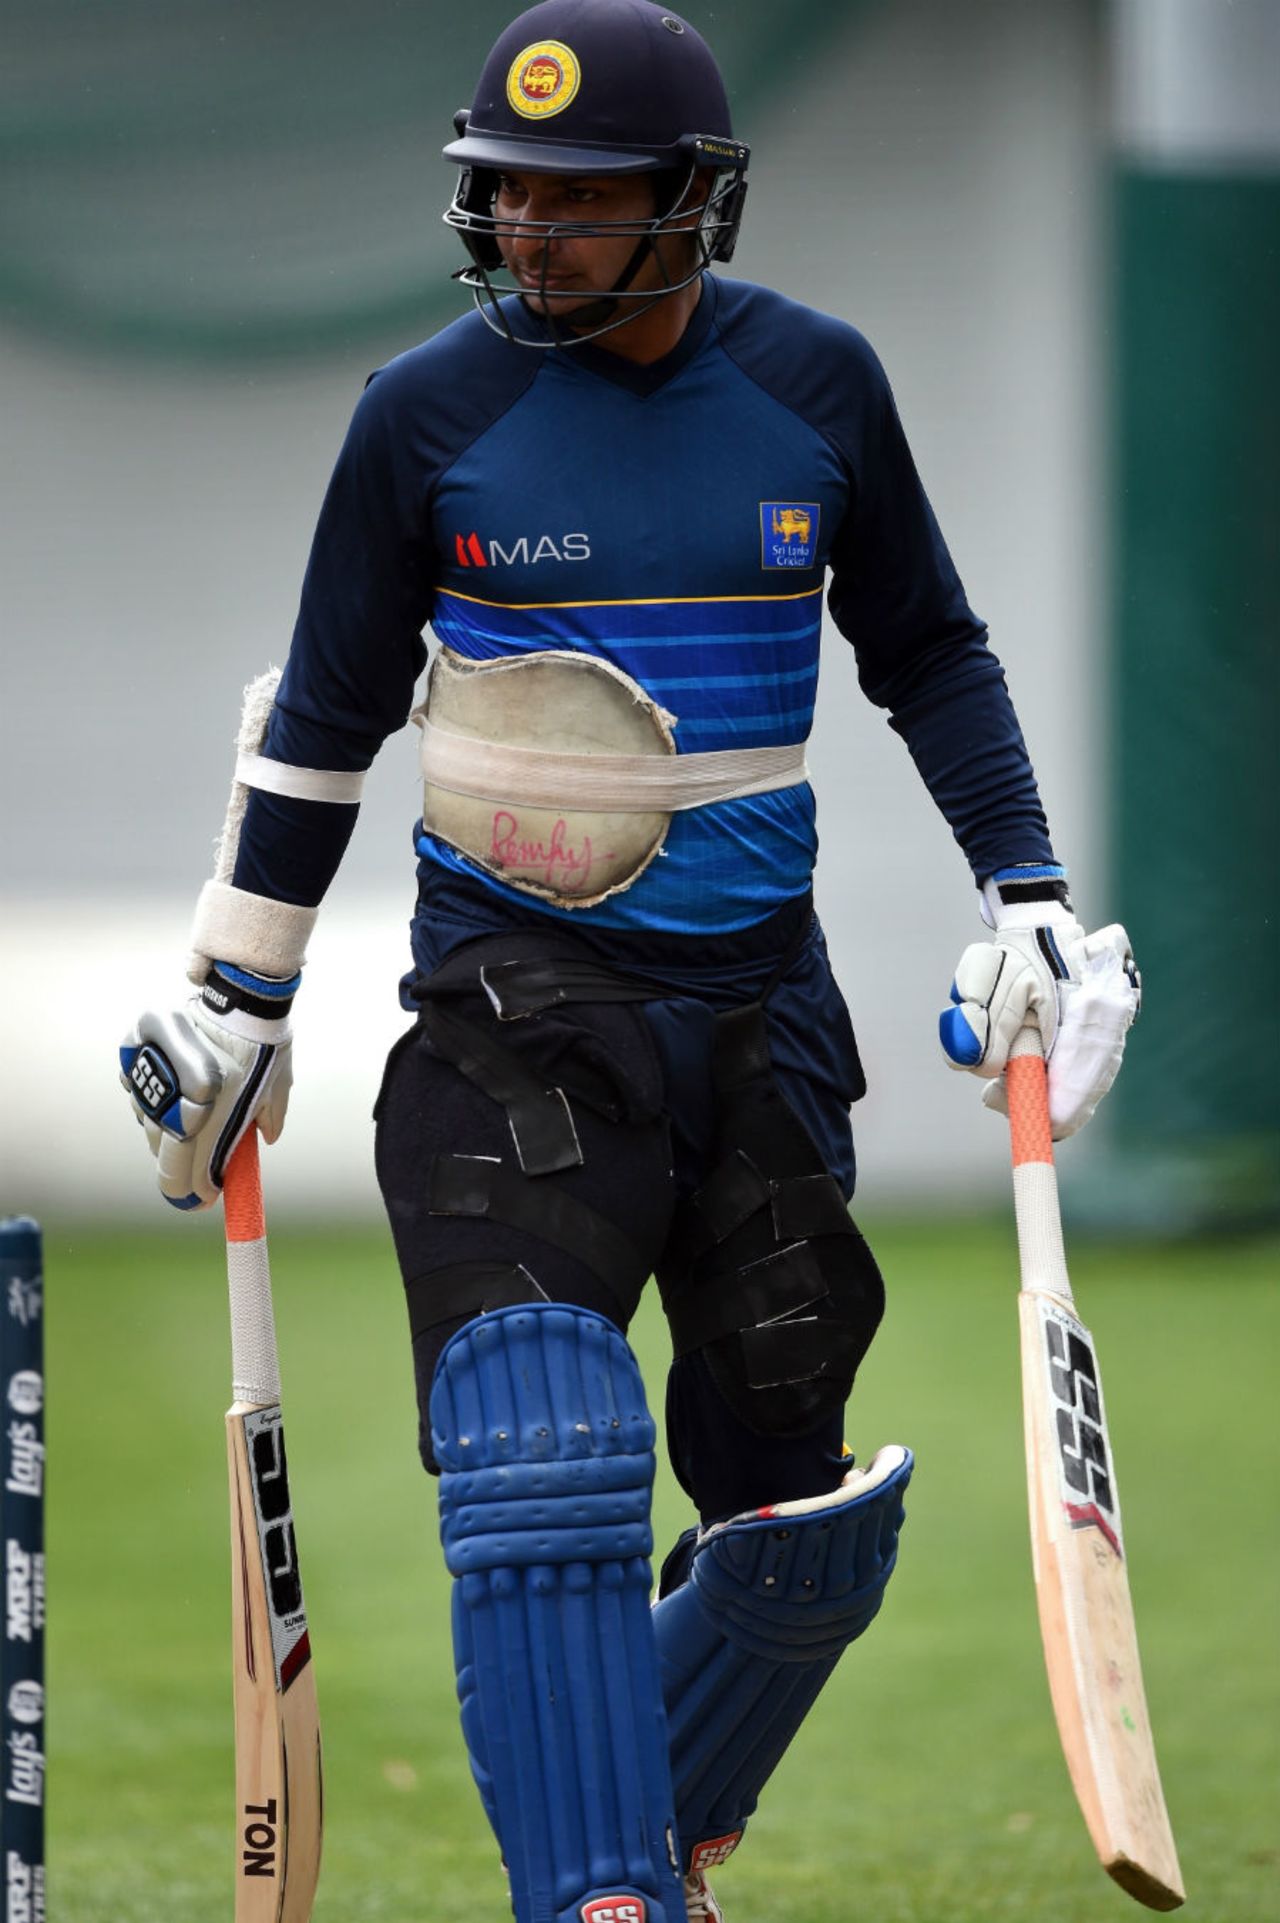 As if one bat weren't enough: Kumar Sangakkara tries out different bats, World Cup 2015, Sydney, March 16, 2015